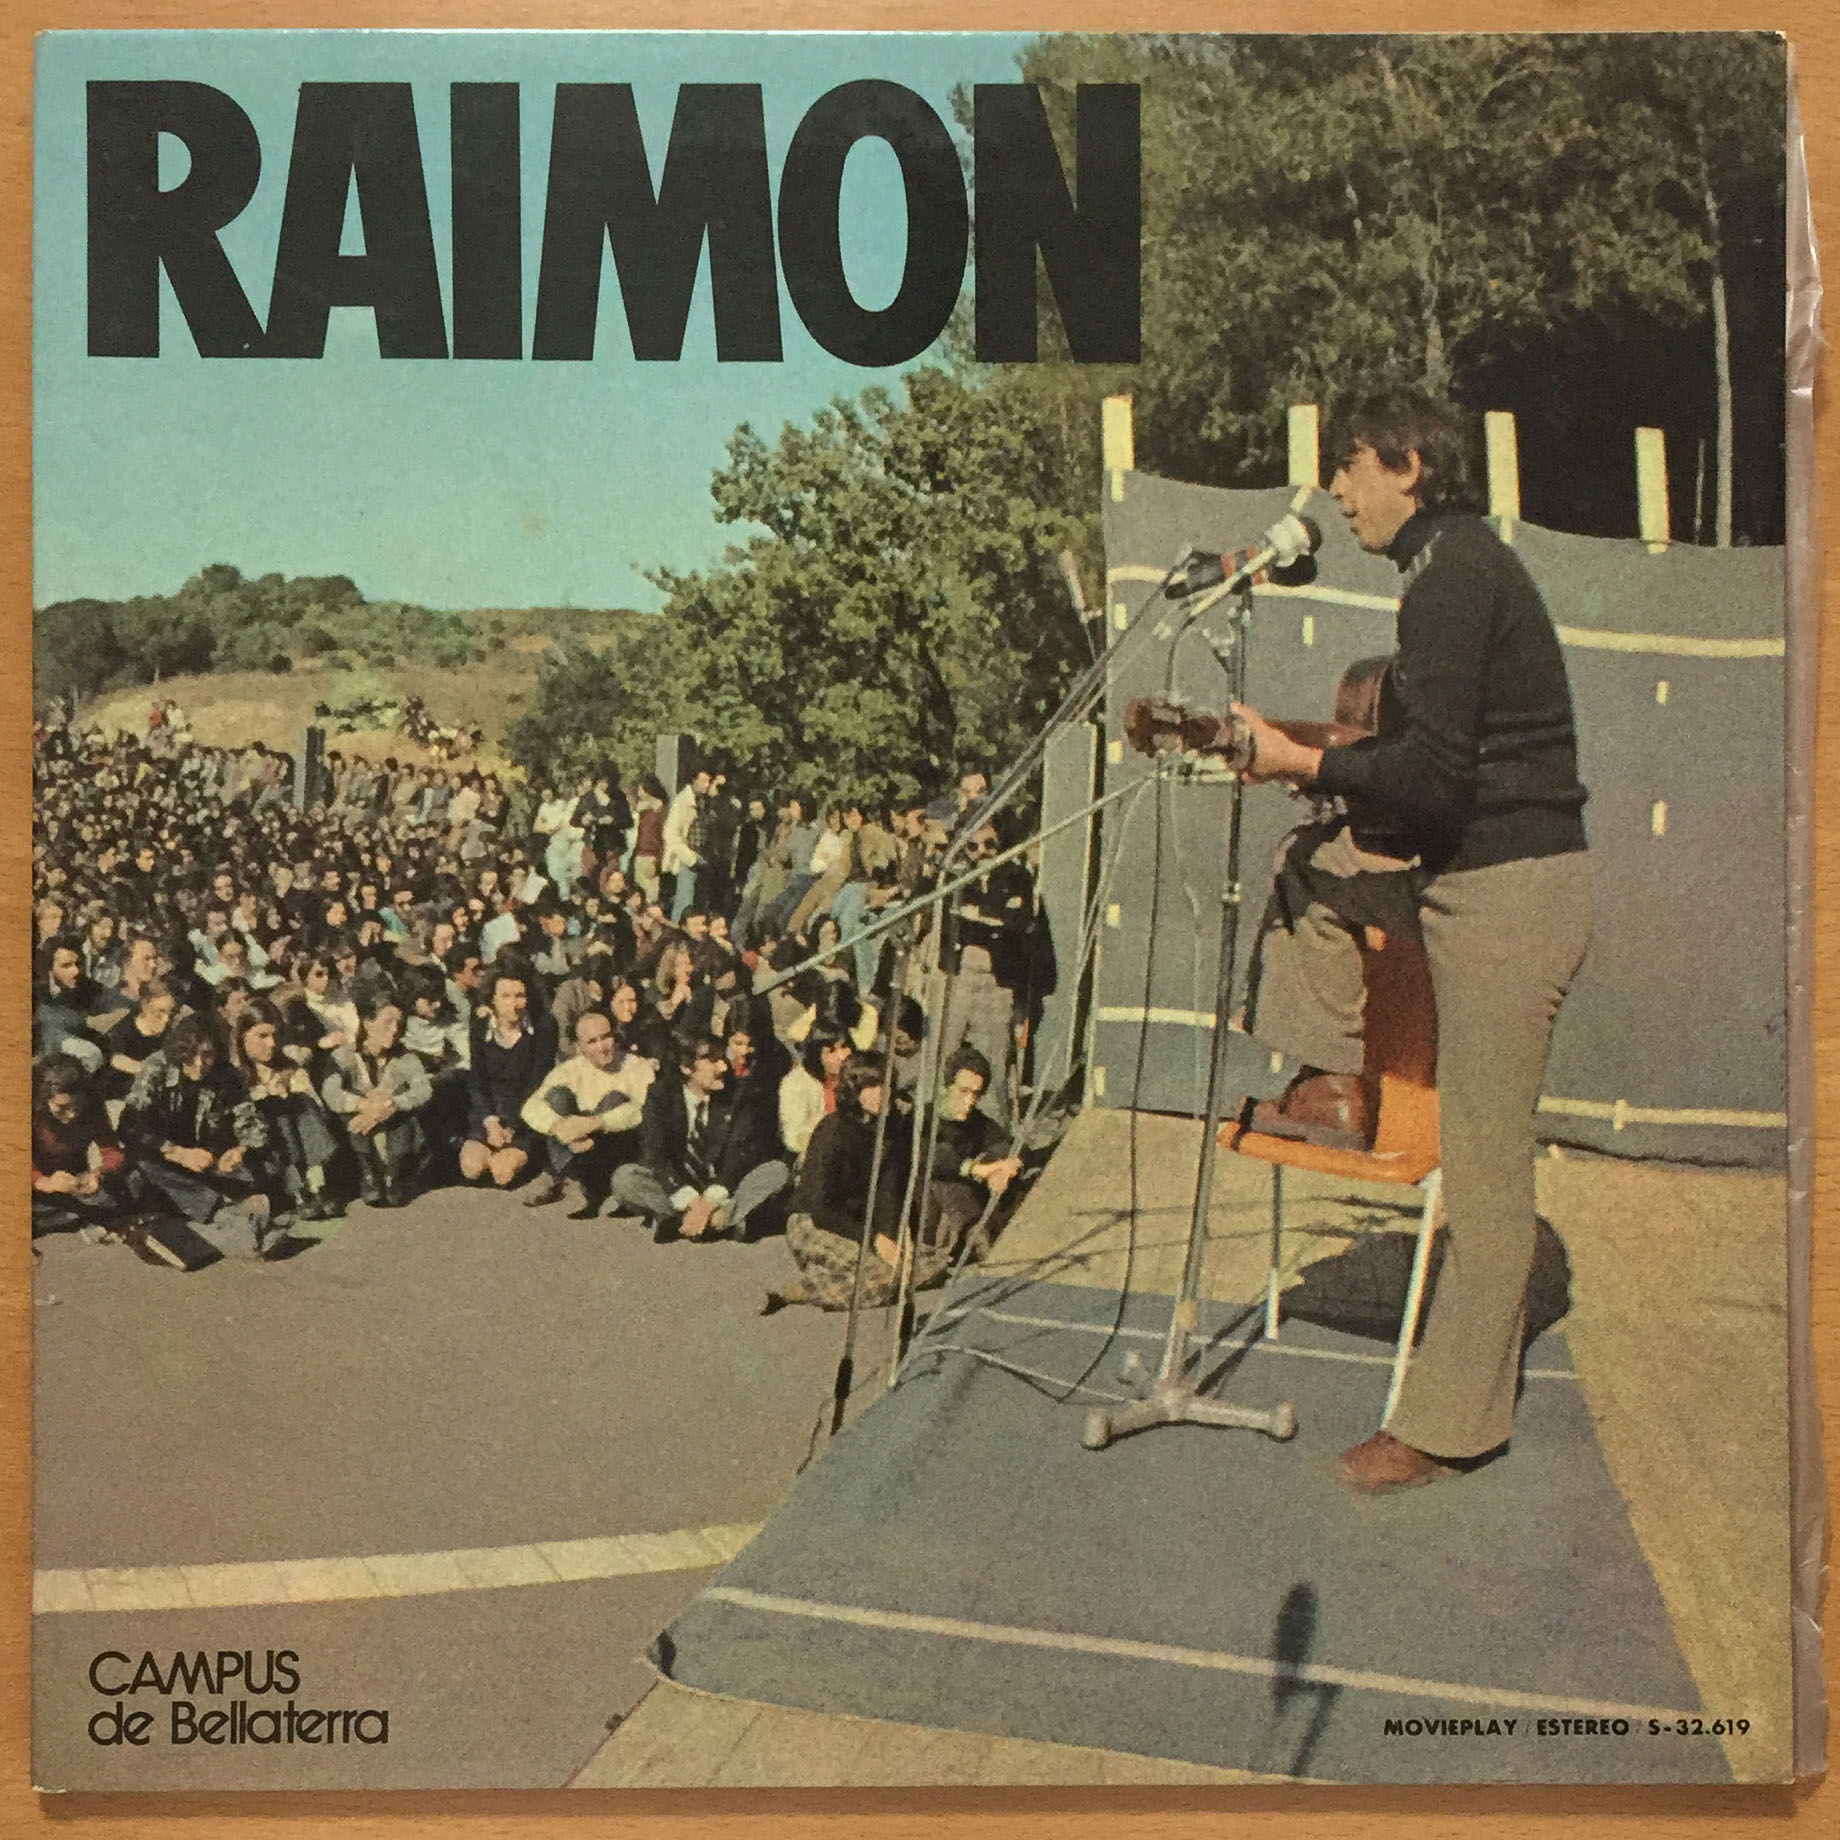 Raimon-Campus de Bellatera. 1974 Movieplay